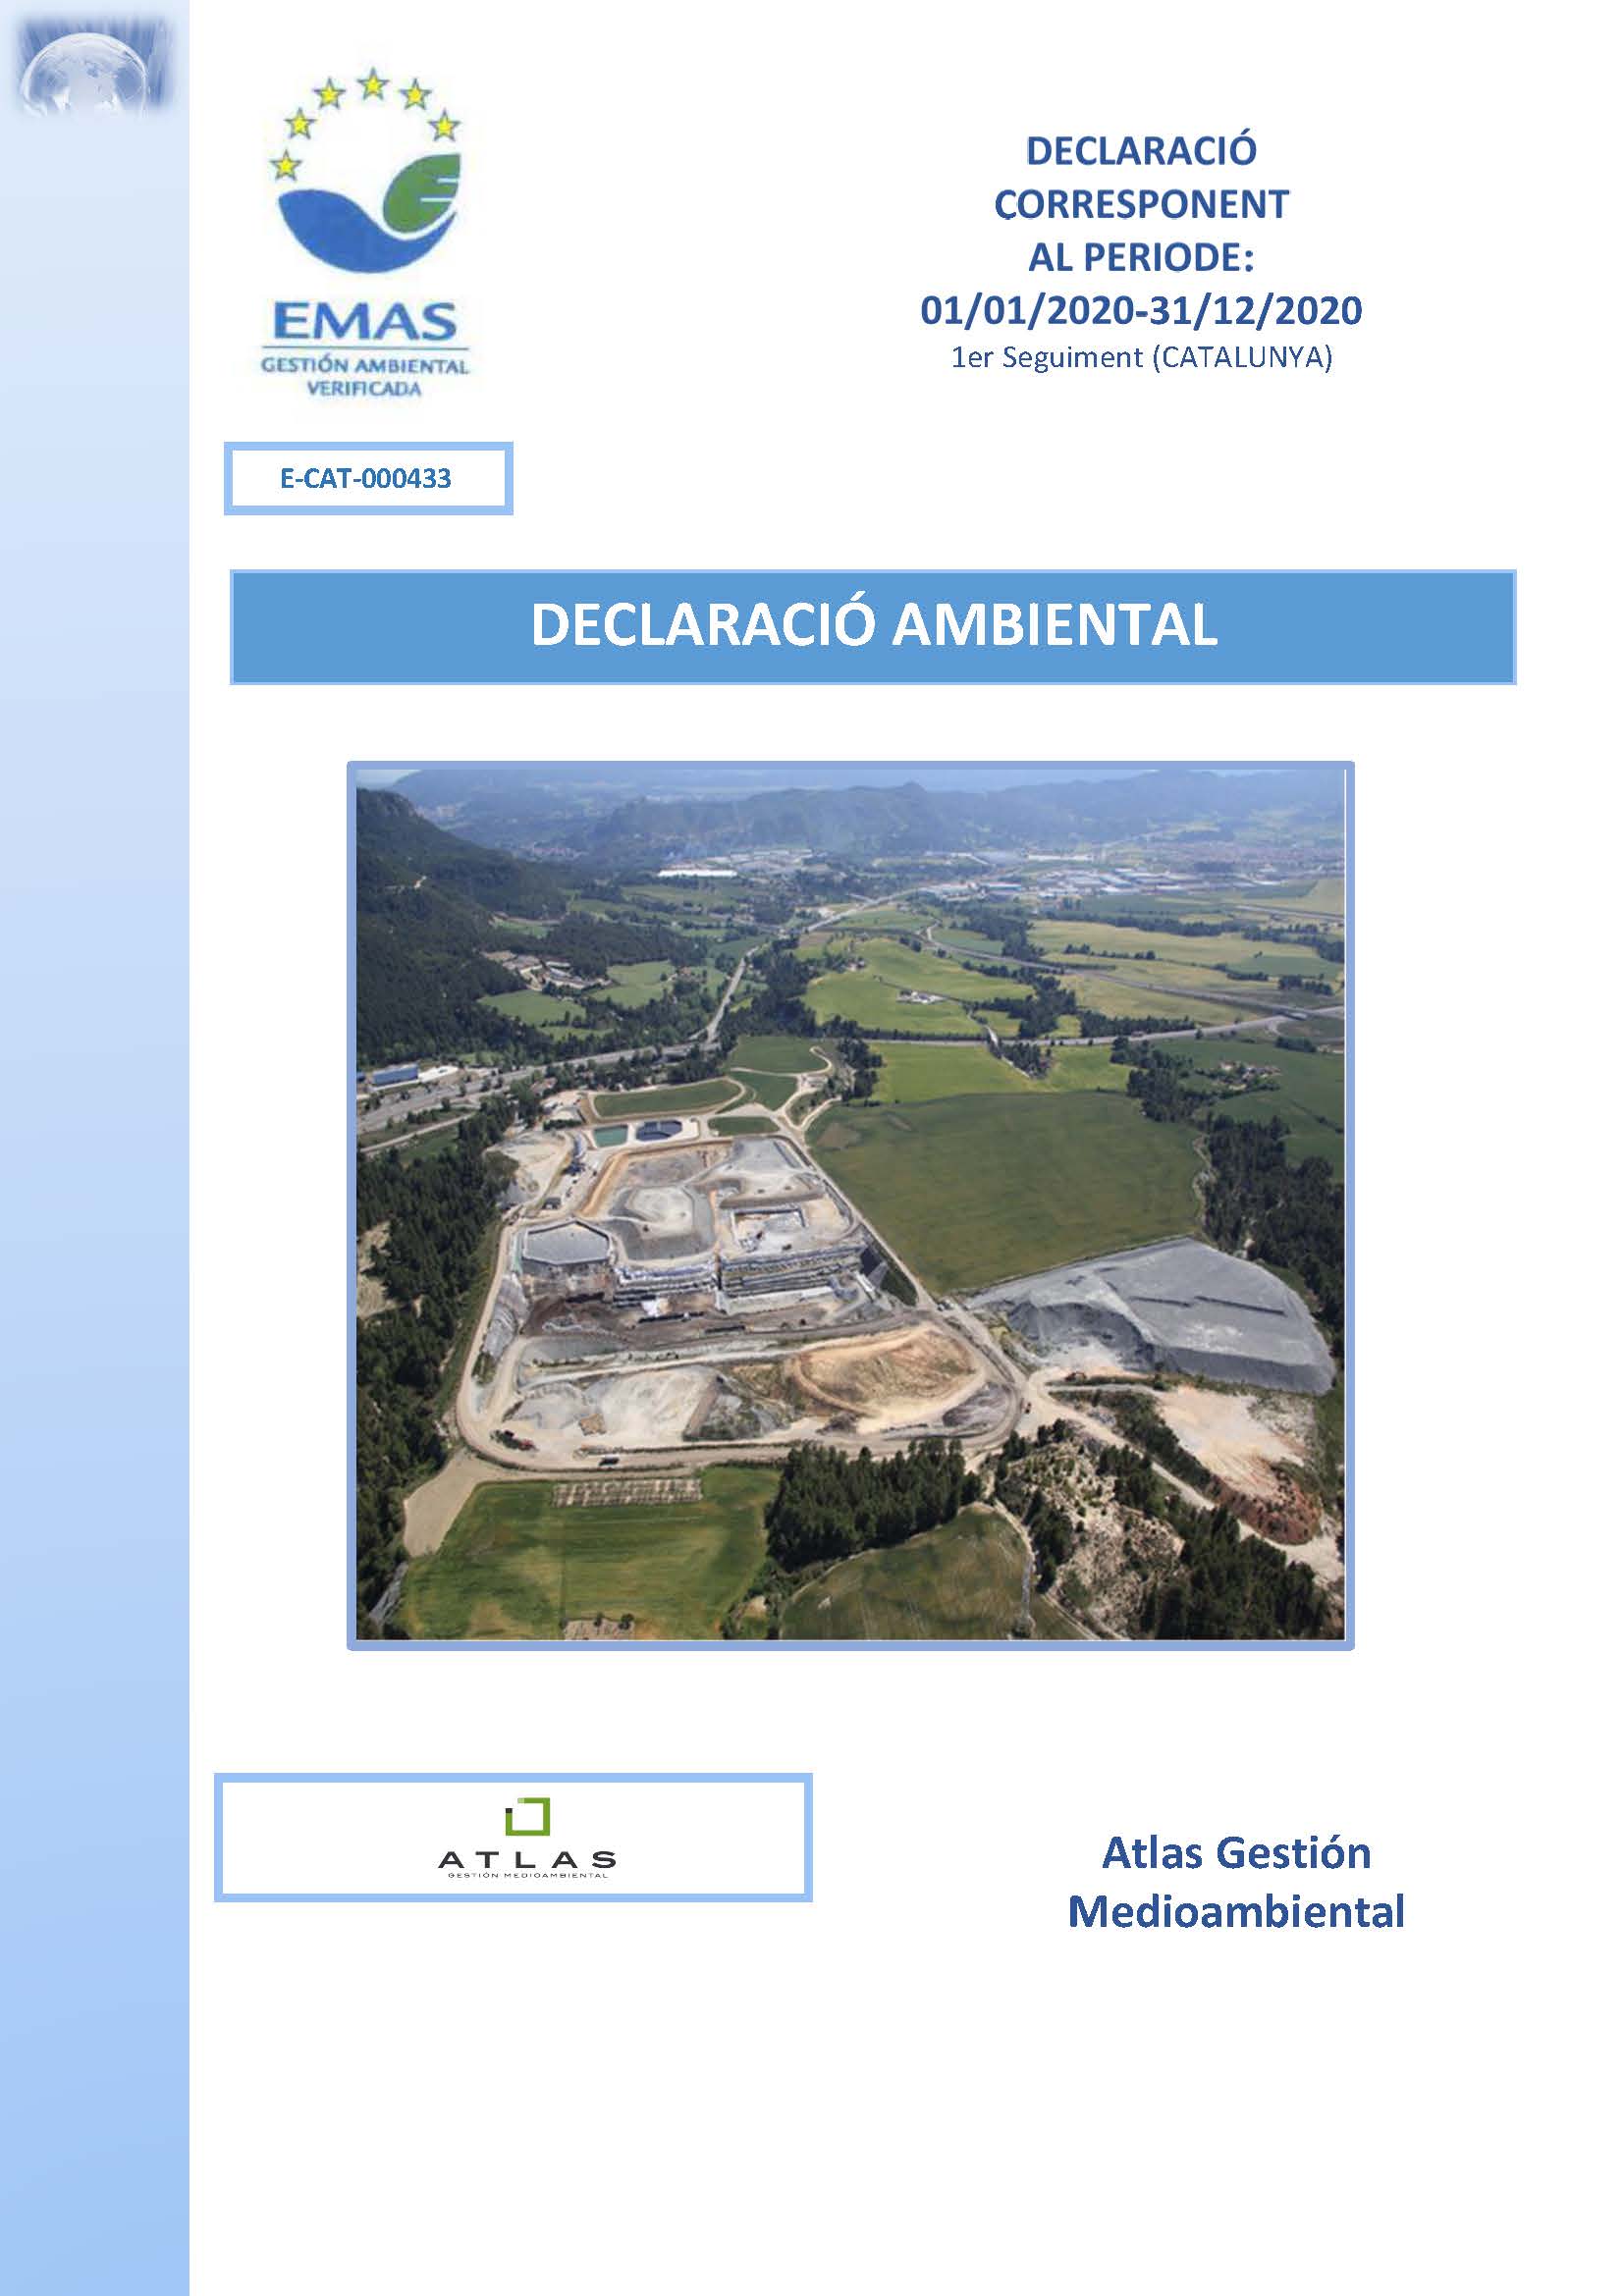 Declaración Ambiental Atlas Gestión Mediomabiental